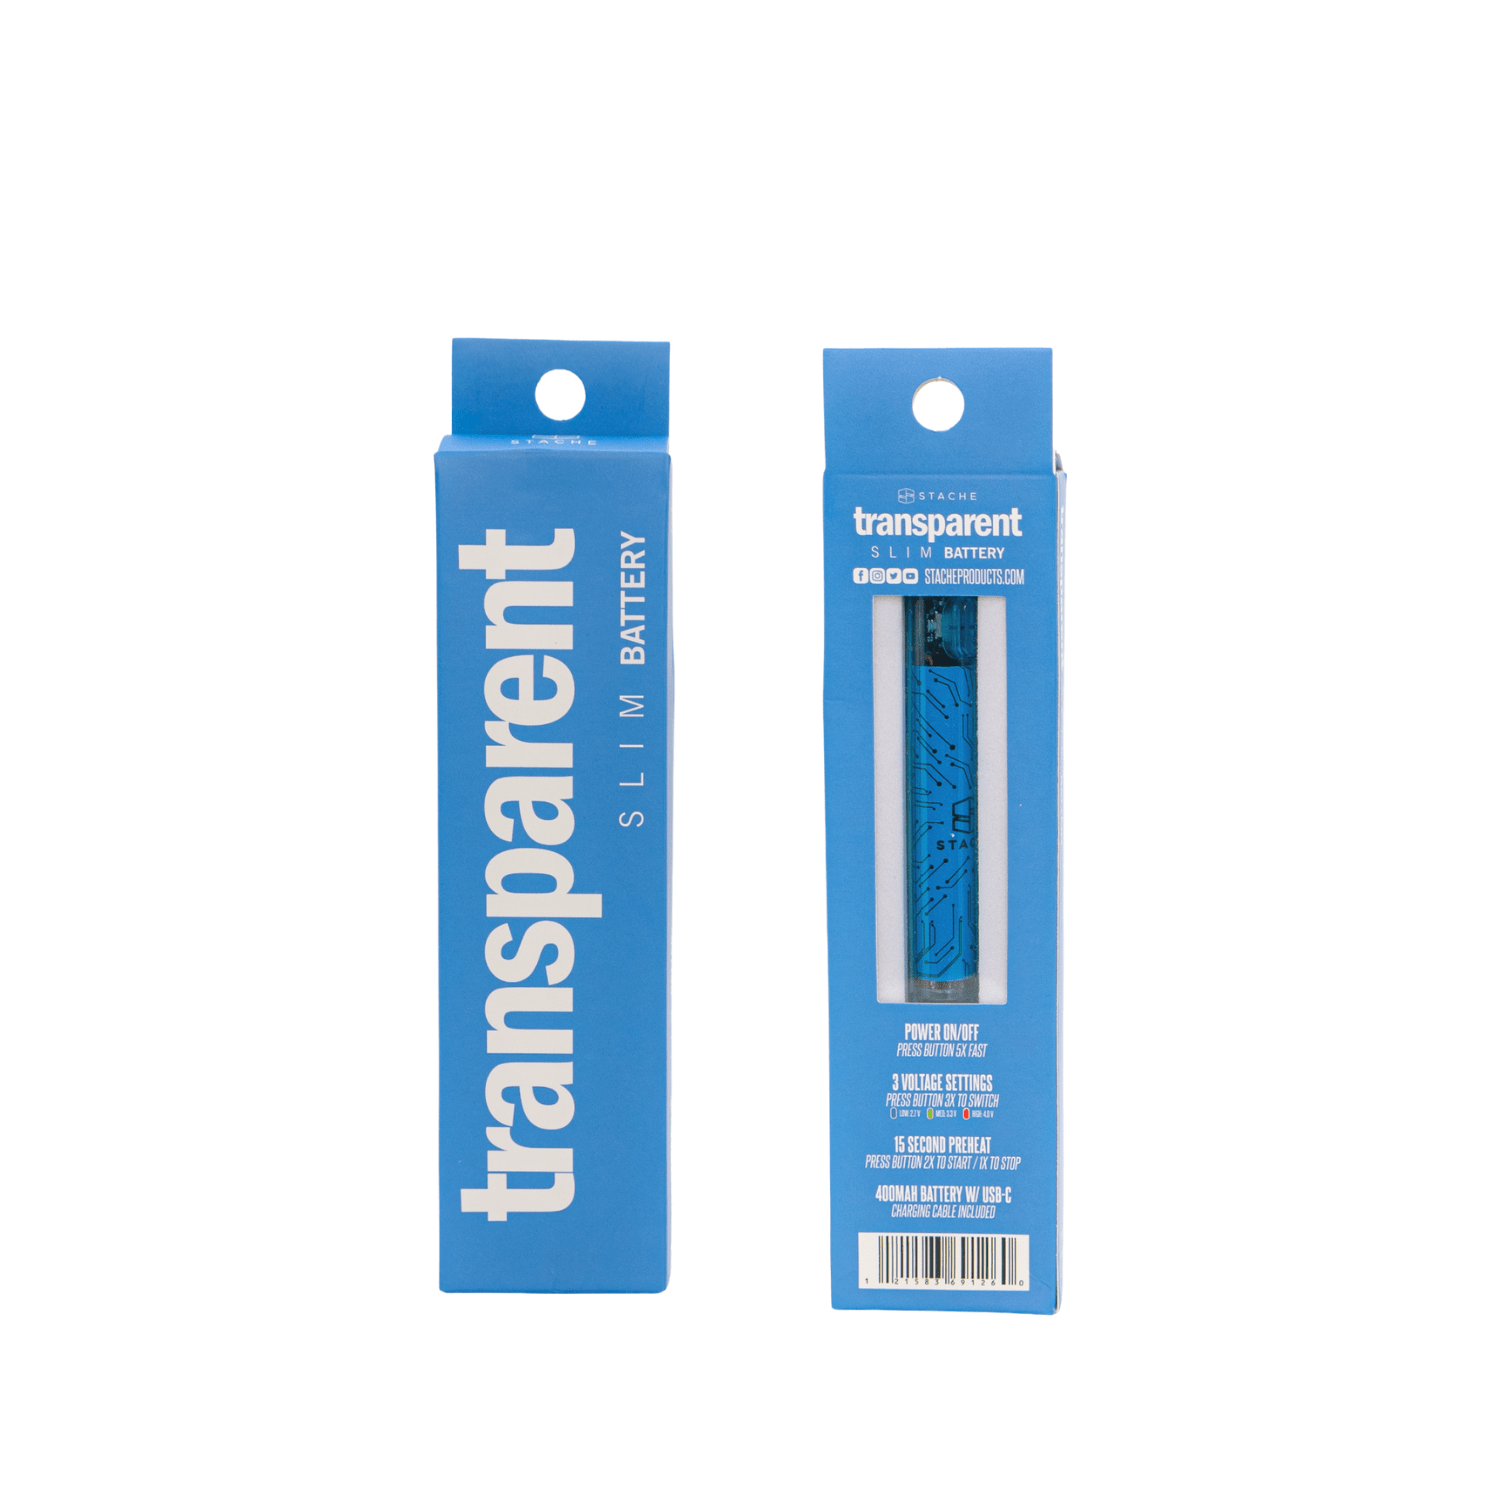 Blue Stache - Transparent 510 battery